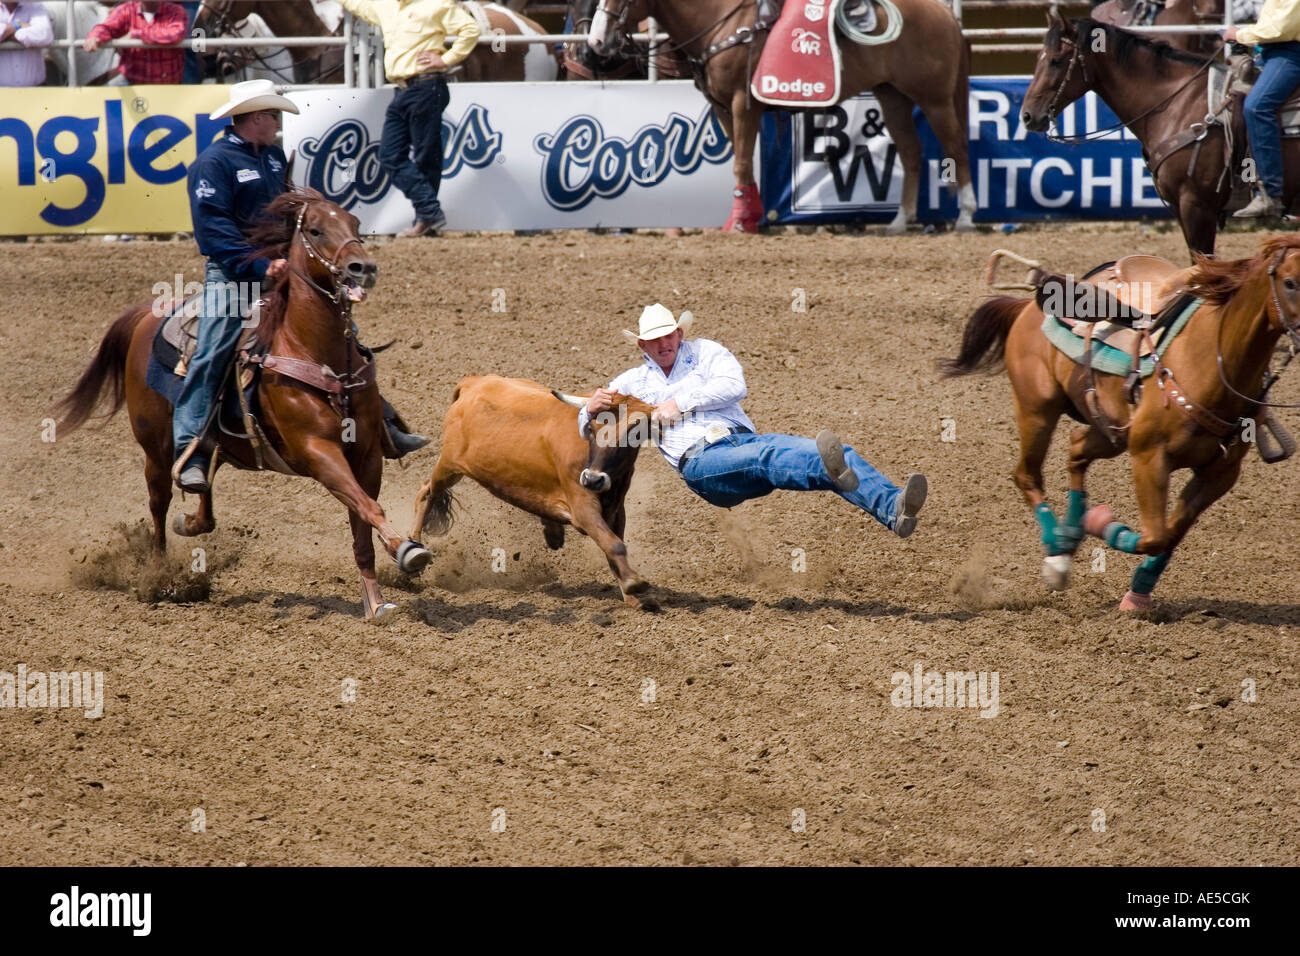 Verlassen sein Pferd auf die geführten grabbing Kalb Hörner in der Luft in Rodeo Cowboy Steuern Ringen an Stockfoto